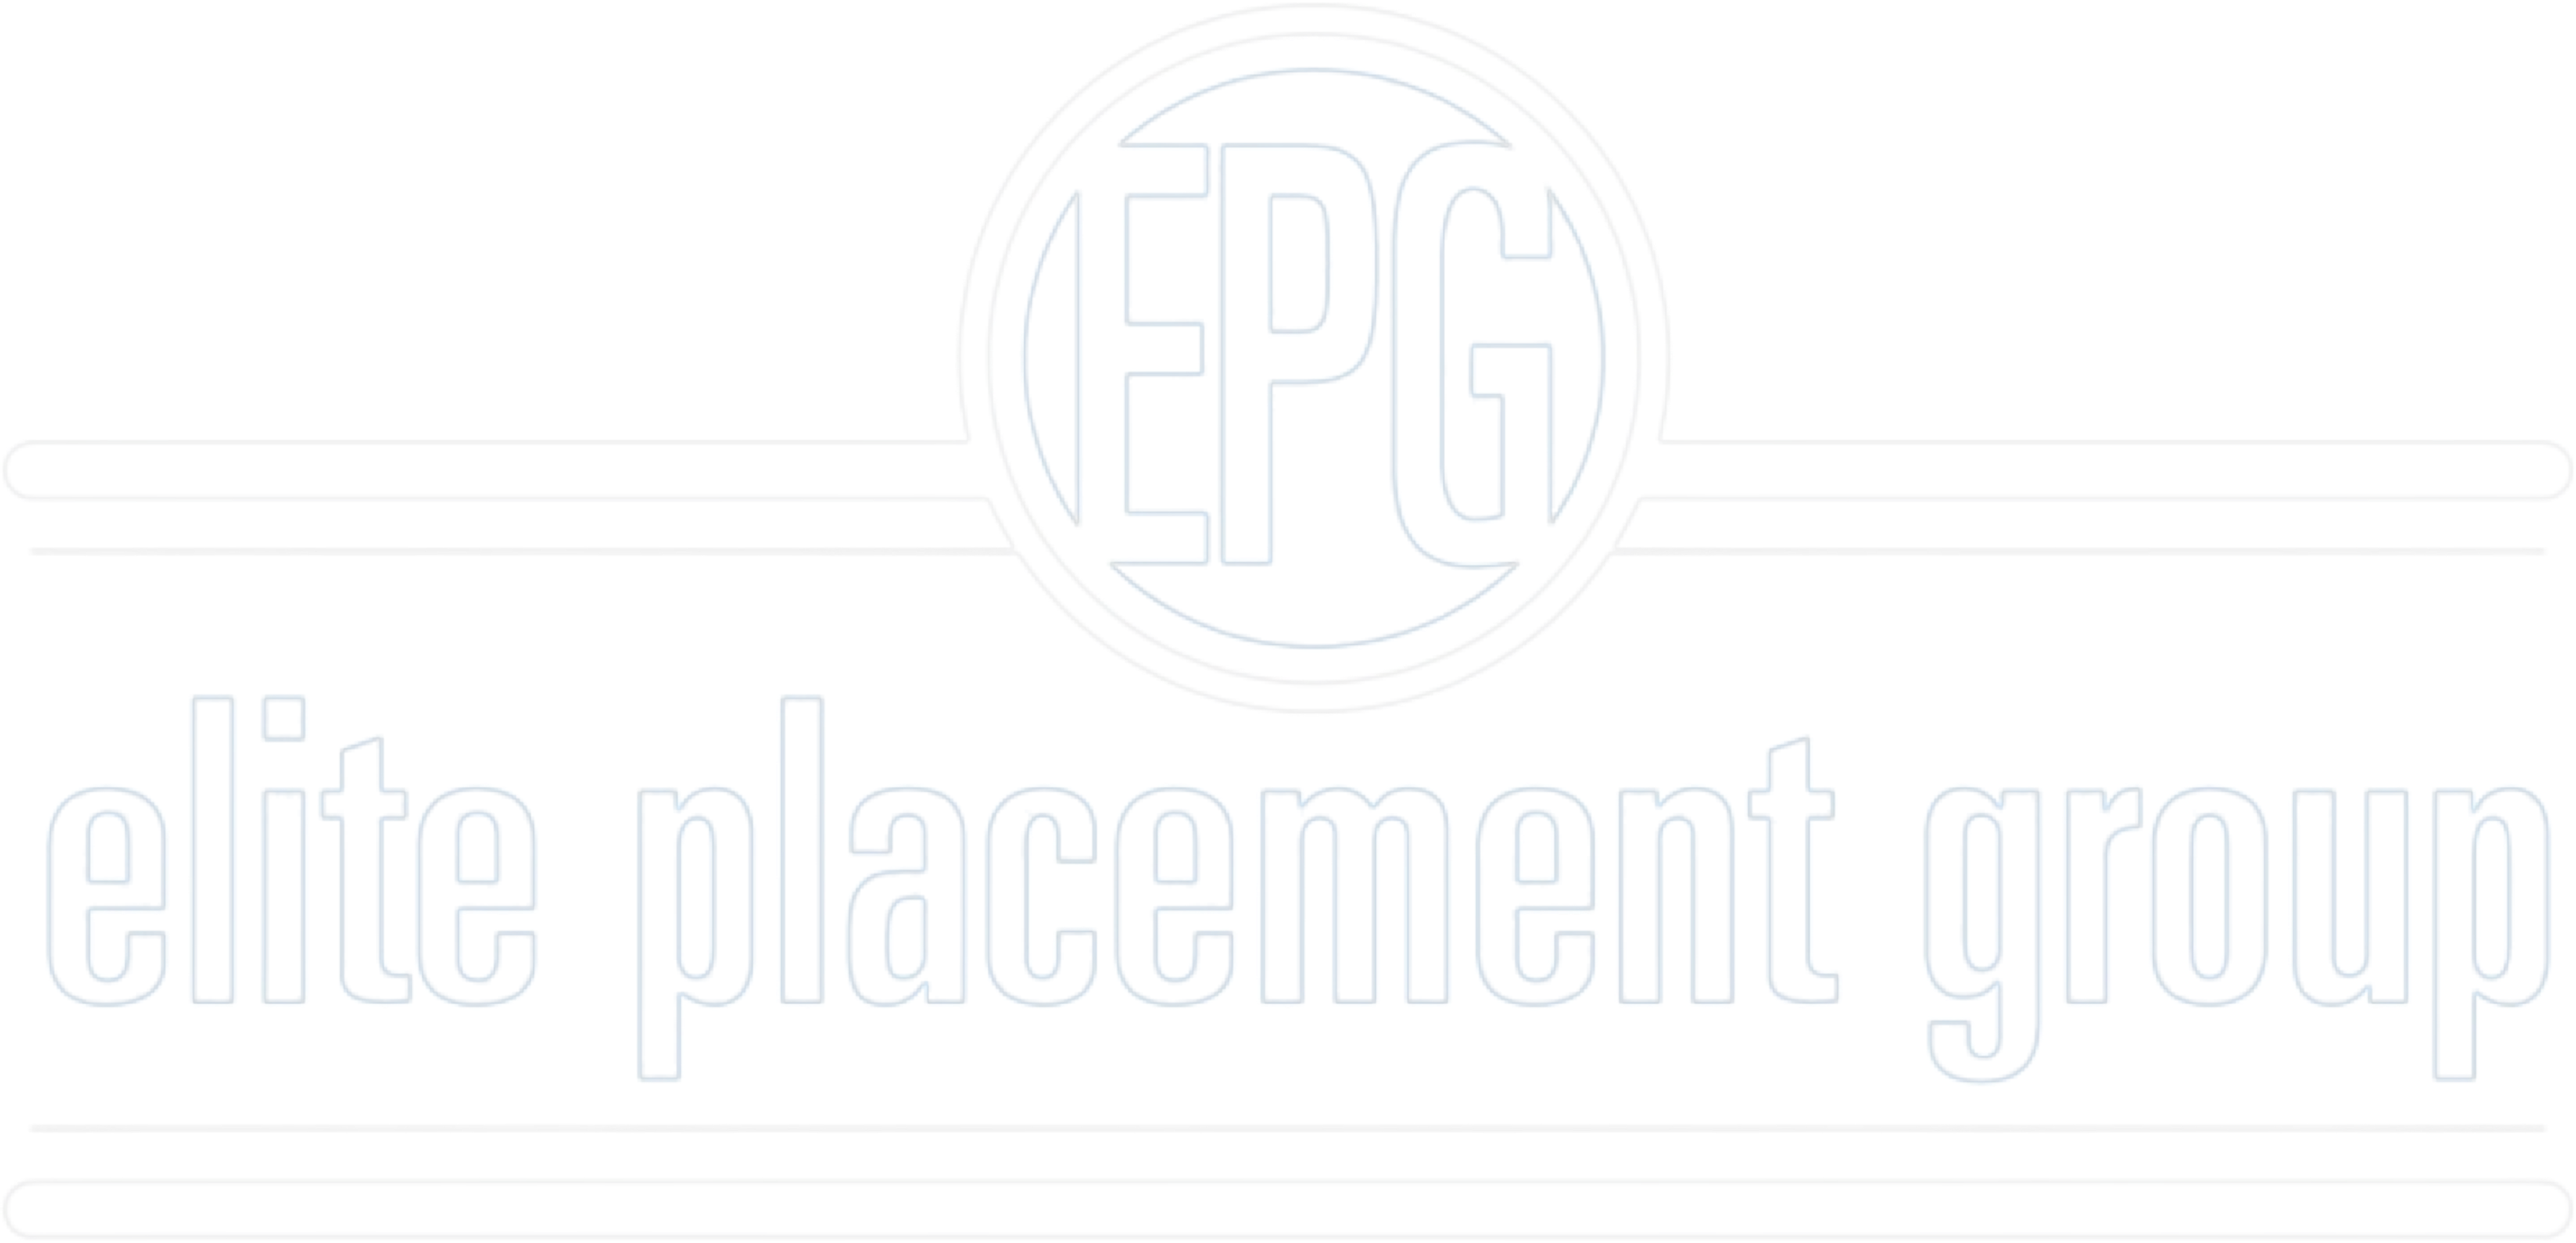 EPG Logo - White